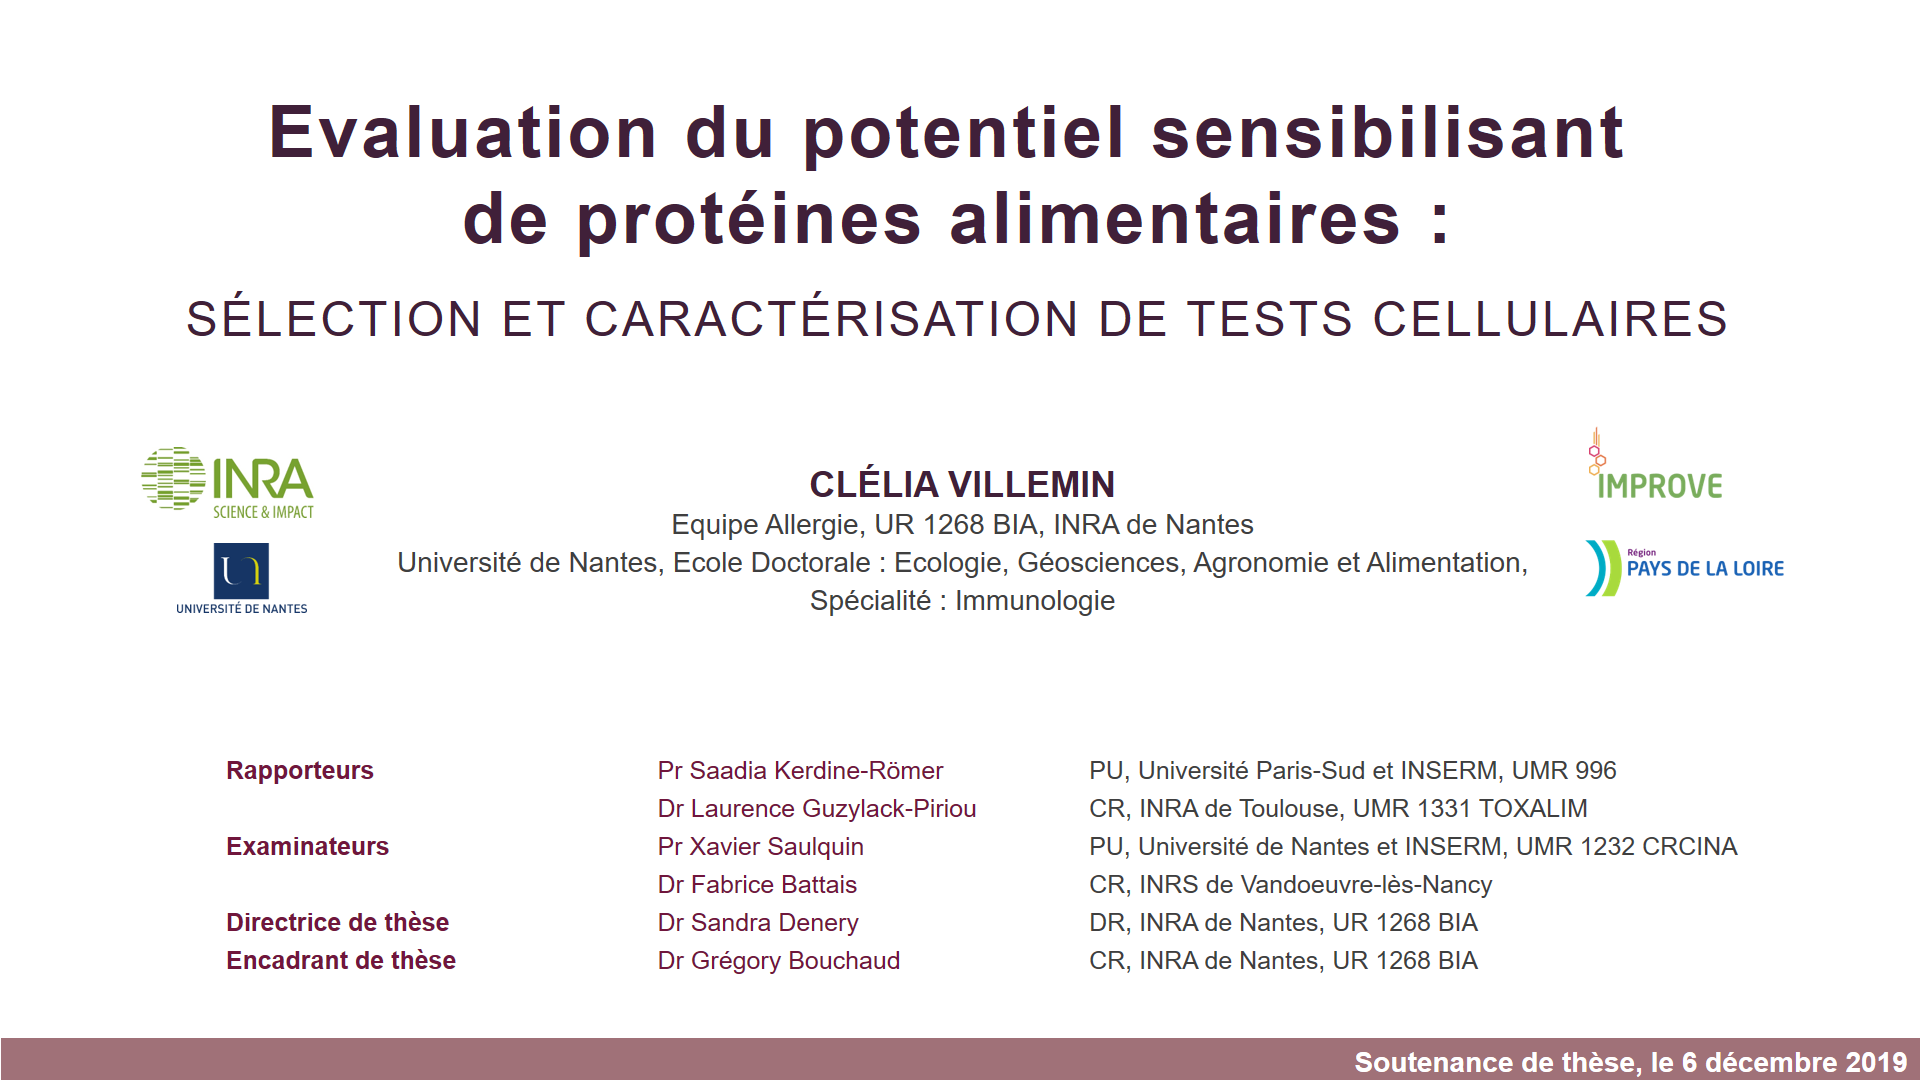 Evaluation du potentiel sensibilisant de protéines alimentaires : sélection et caractérisation de tests cellulaires